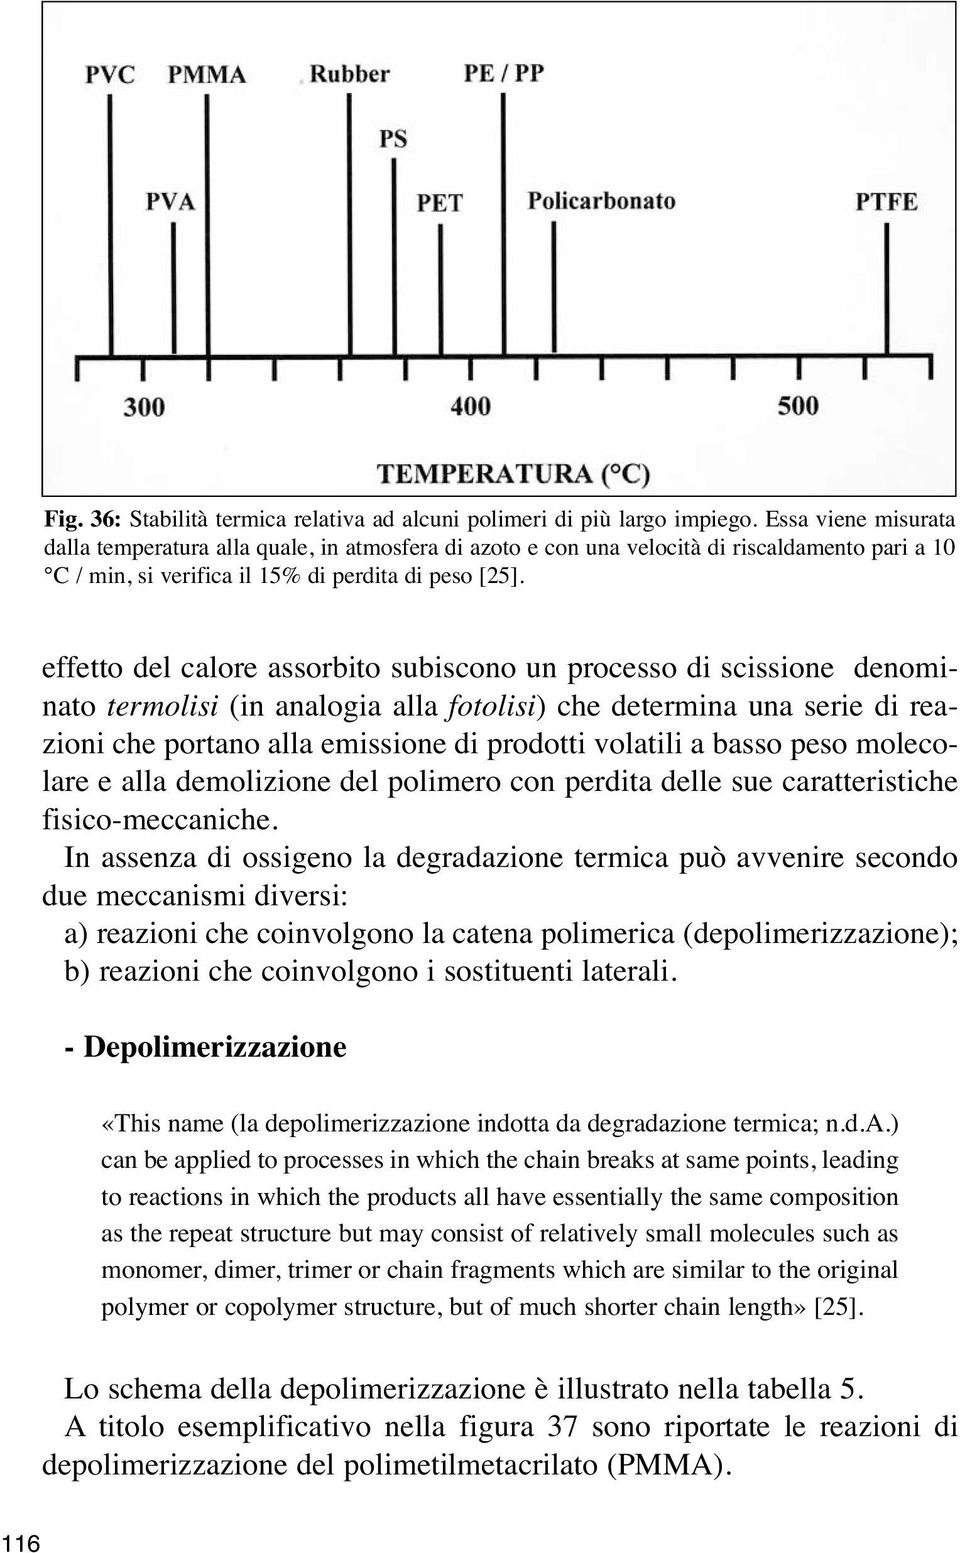 effetto del calore assorbito subiscono un processo di scissione denominato termolisi (in analogia alla fotolisi) che determina una serie di reazioni che portano alla emissione di prodotti volatili a